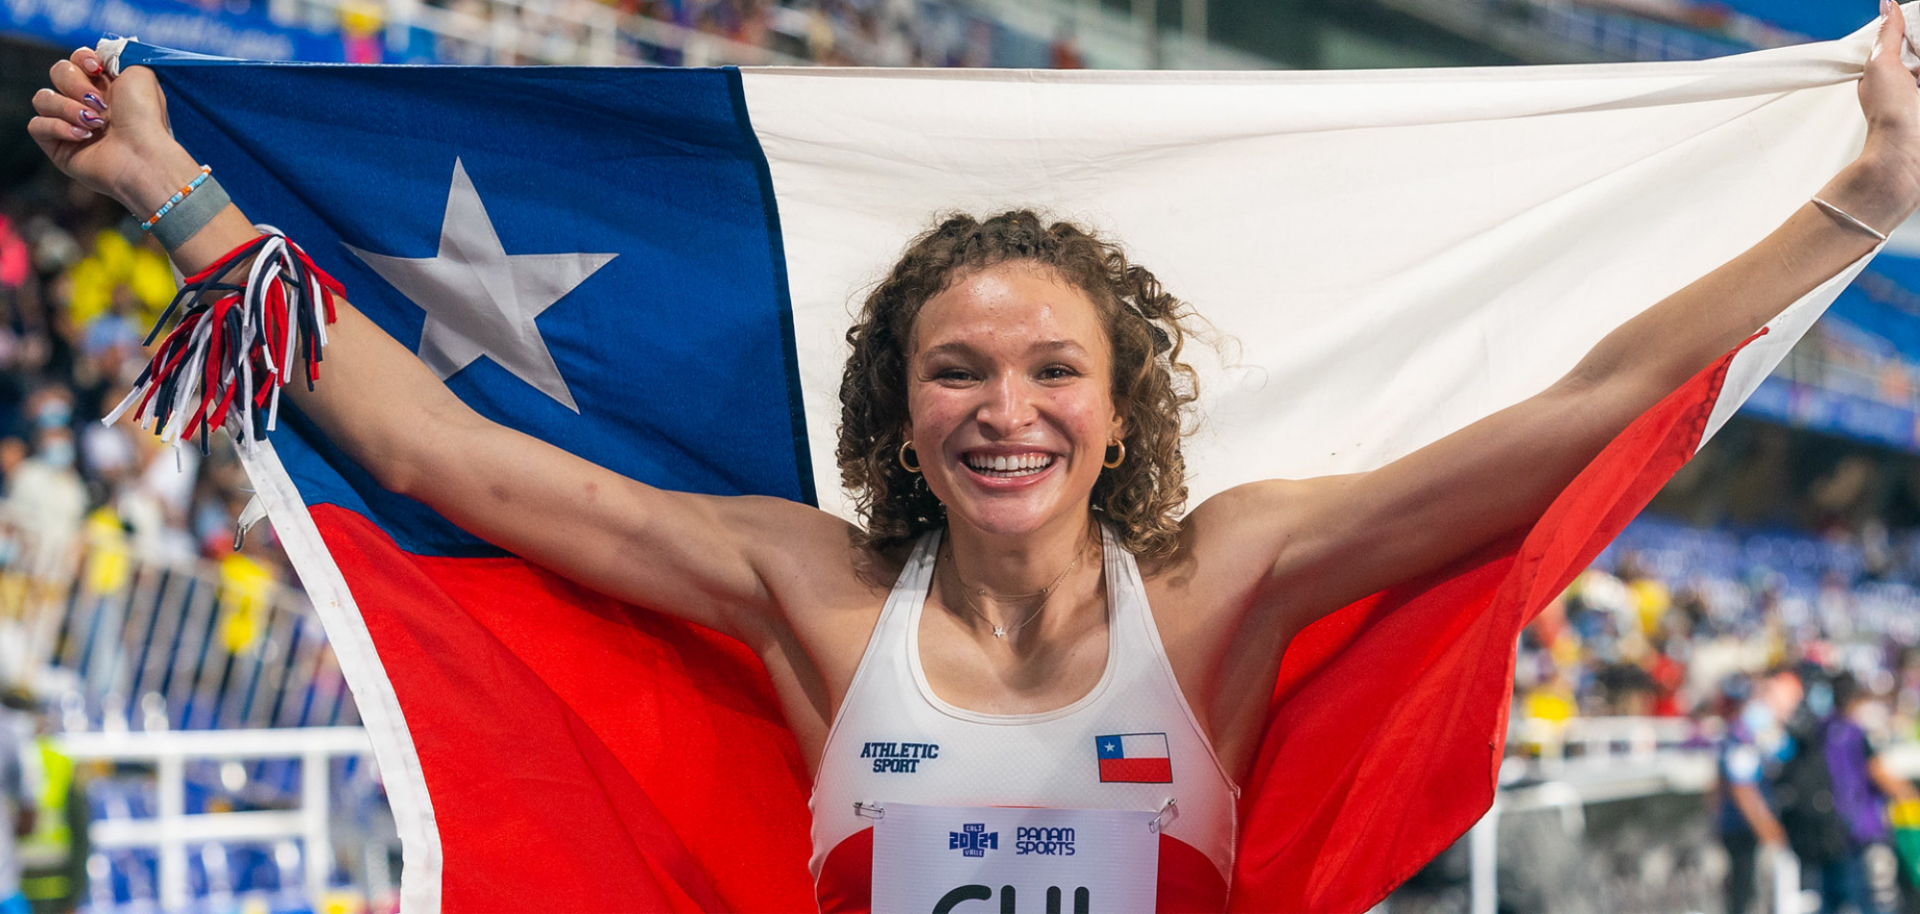 Martina Weil rompe récord chileno en los 400 metros planos